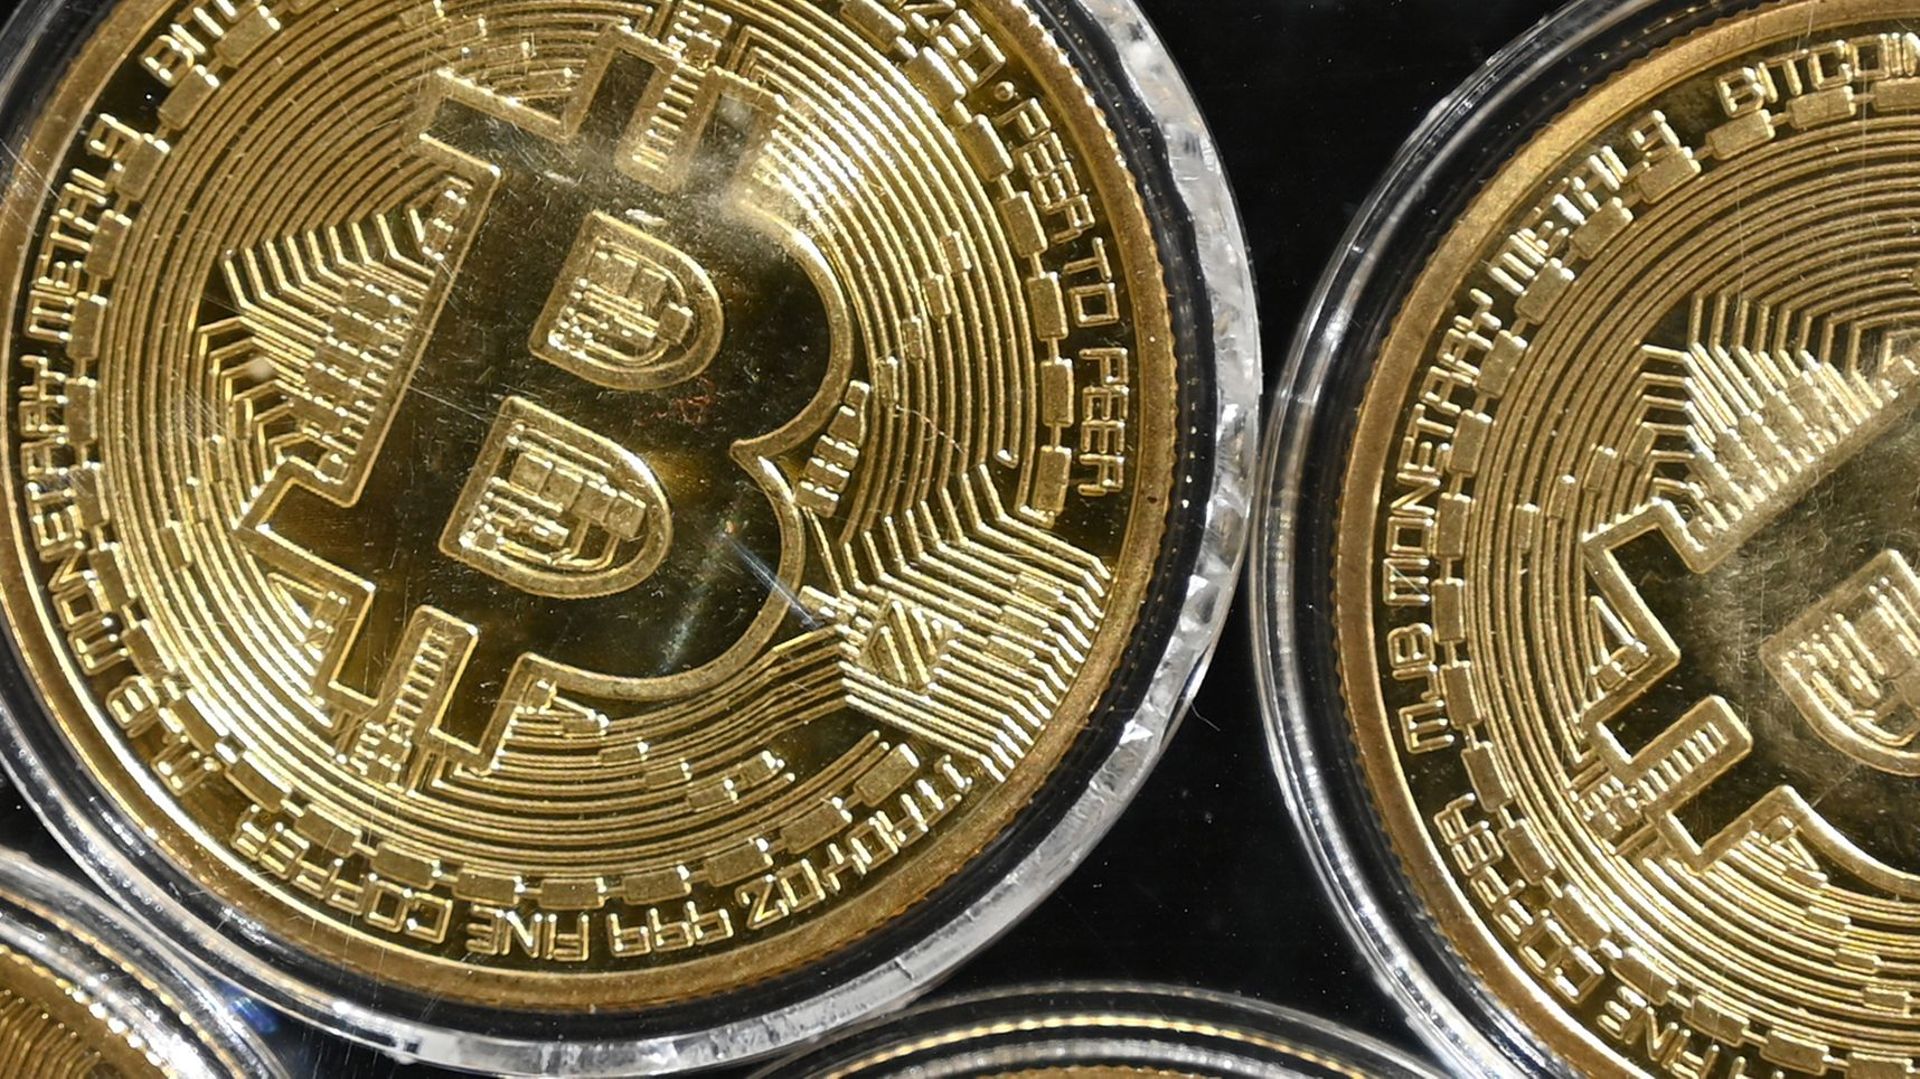 La banque new-yorkaise JP Morgan prévoit que la valeur du bitcoin soit multipliée par dix